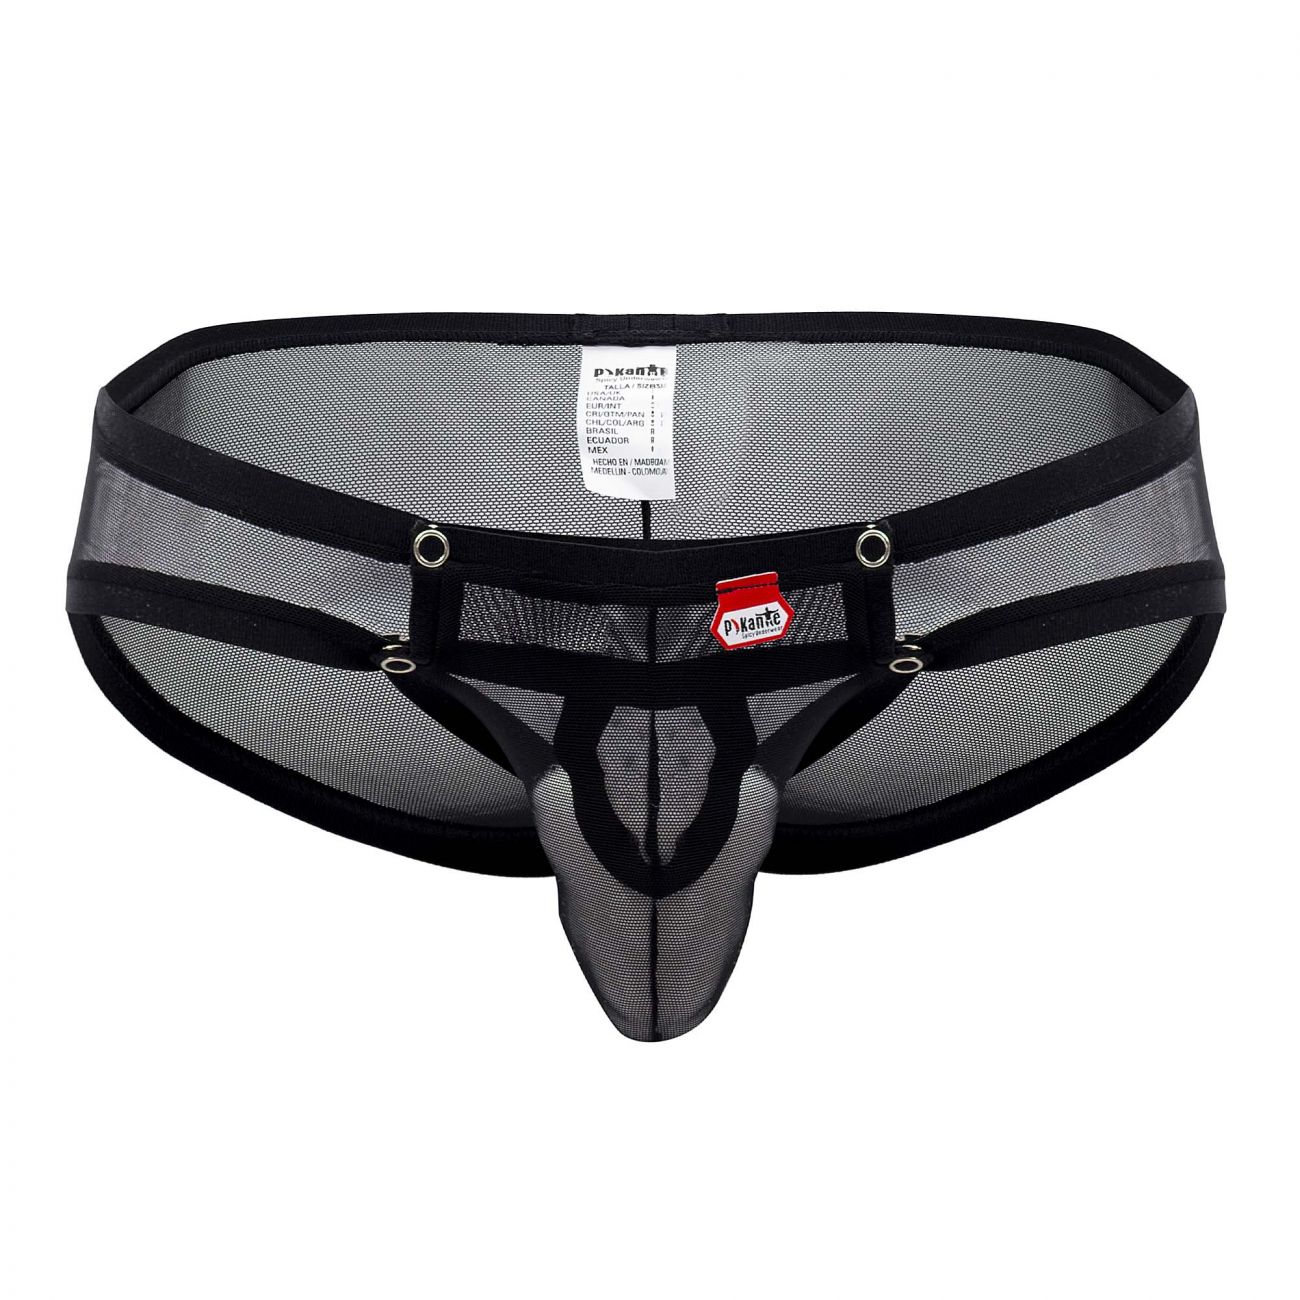 Polair ontgrendelen poeder Underwear: Pikante 0843 Womanizer Briefs | eBay